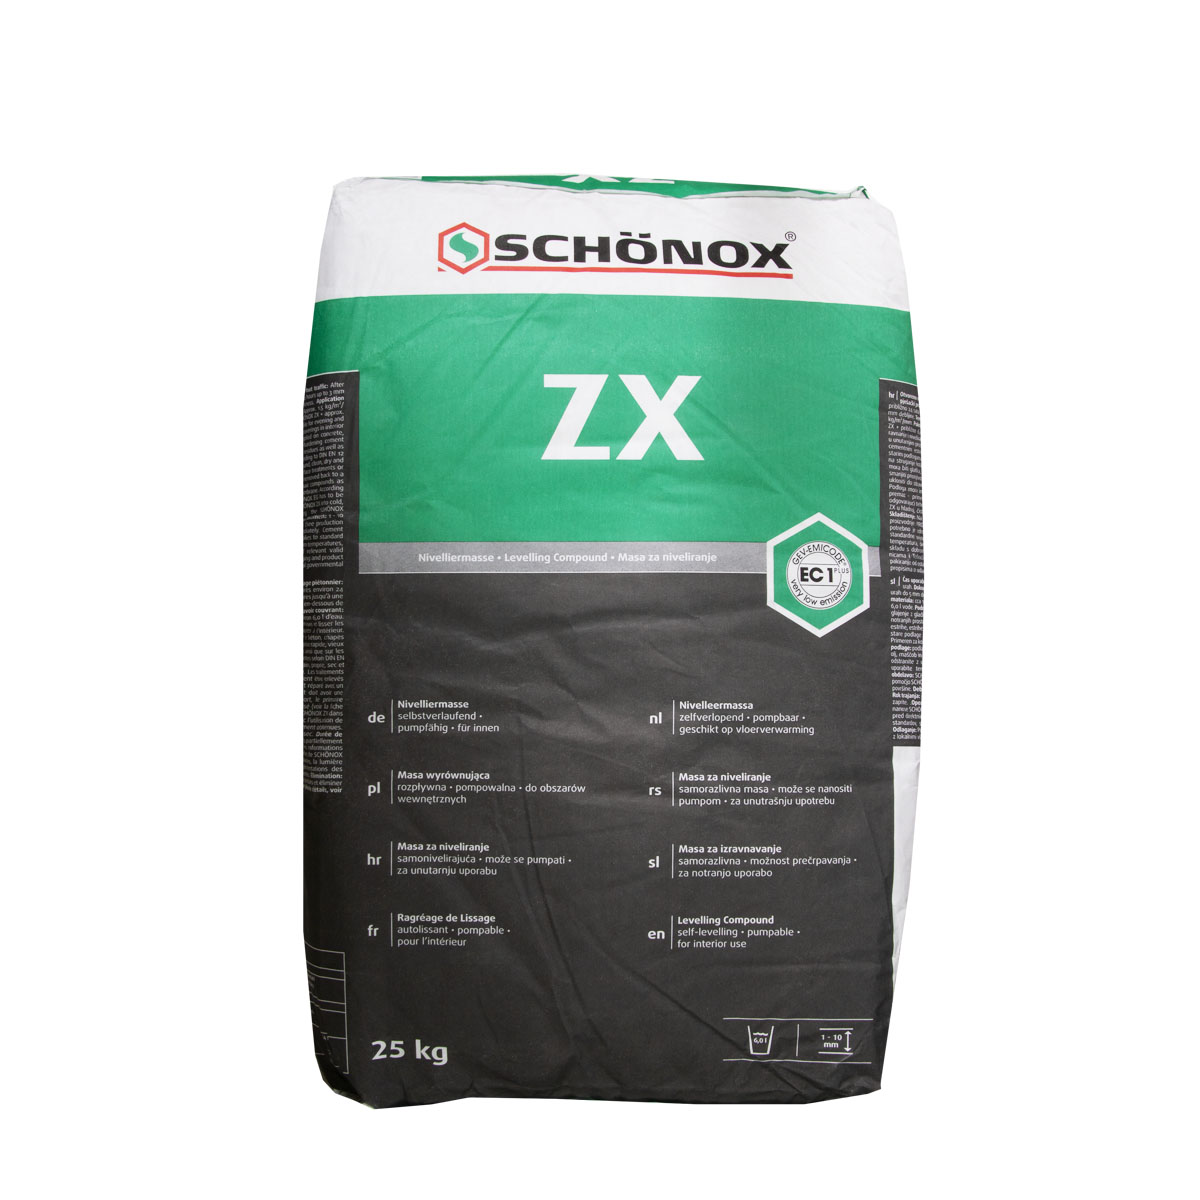 Schoenox_zx_25kg_gross